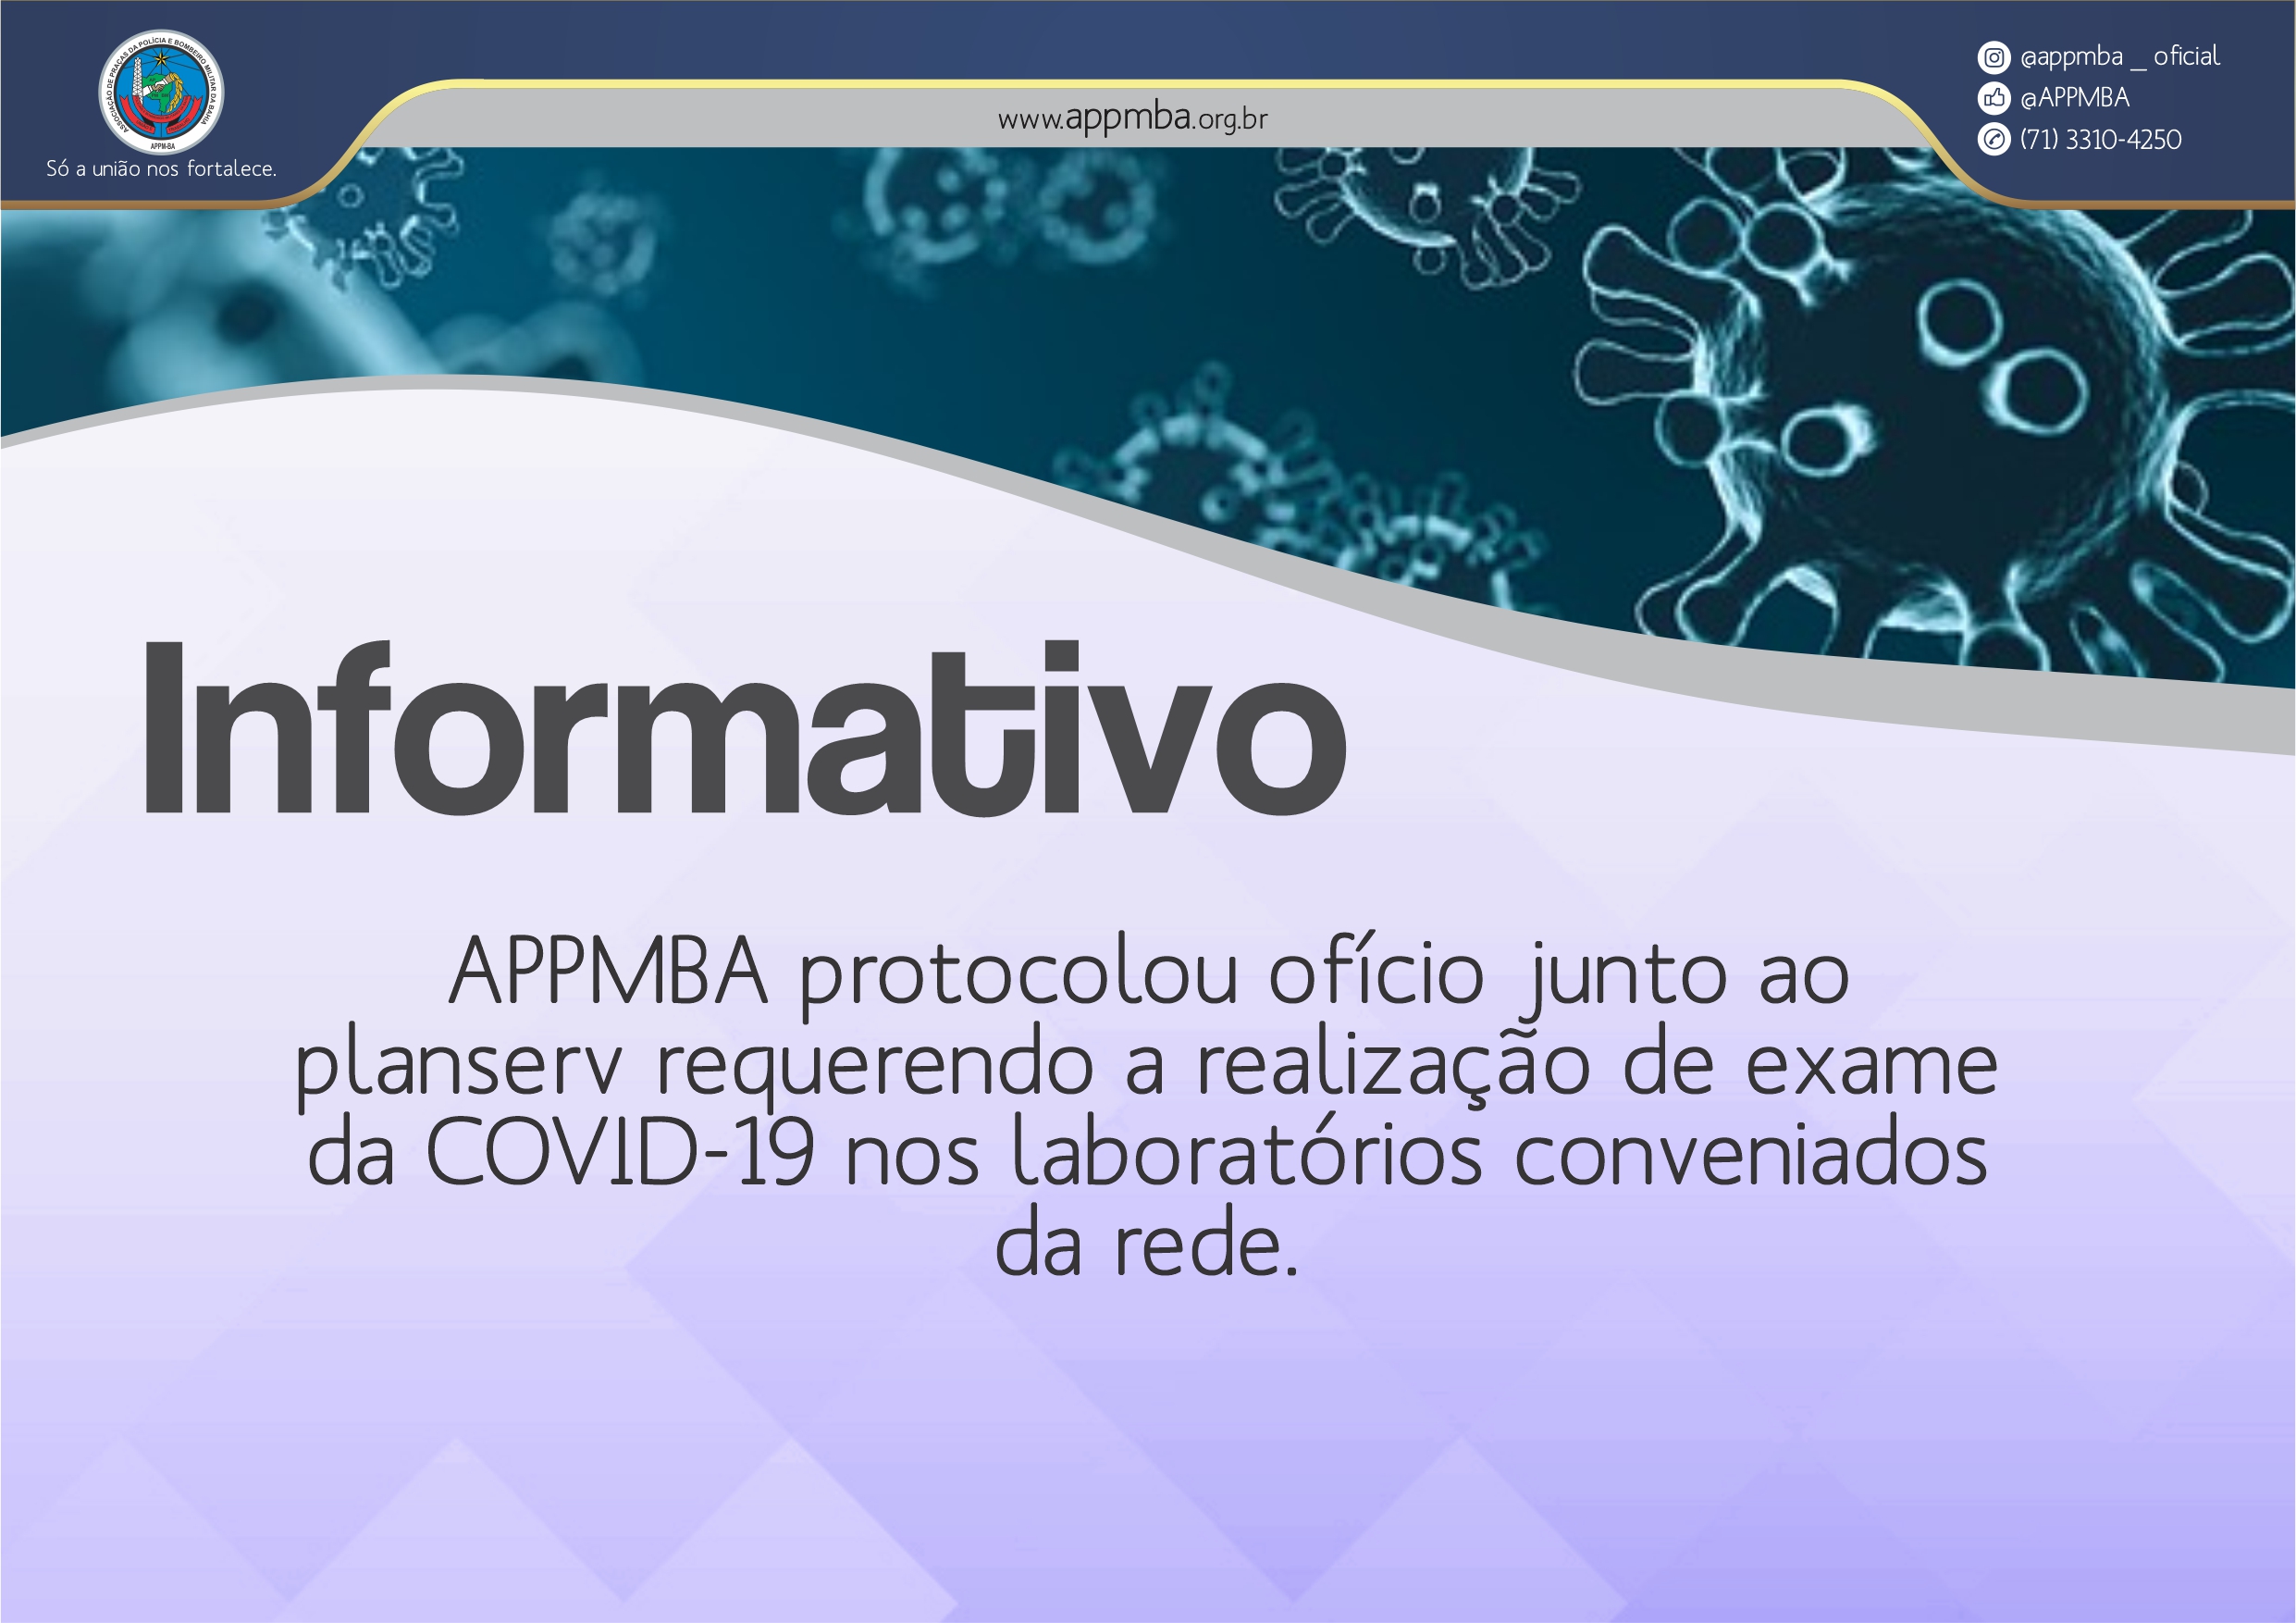 APPMBA protocolou ofício junto ao planserv requerendo a realização de exame da COVID-19 nos laboratórios conveniados da rede